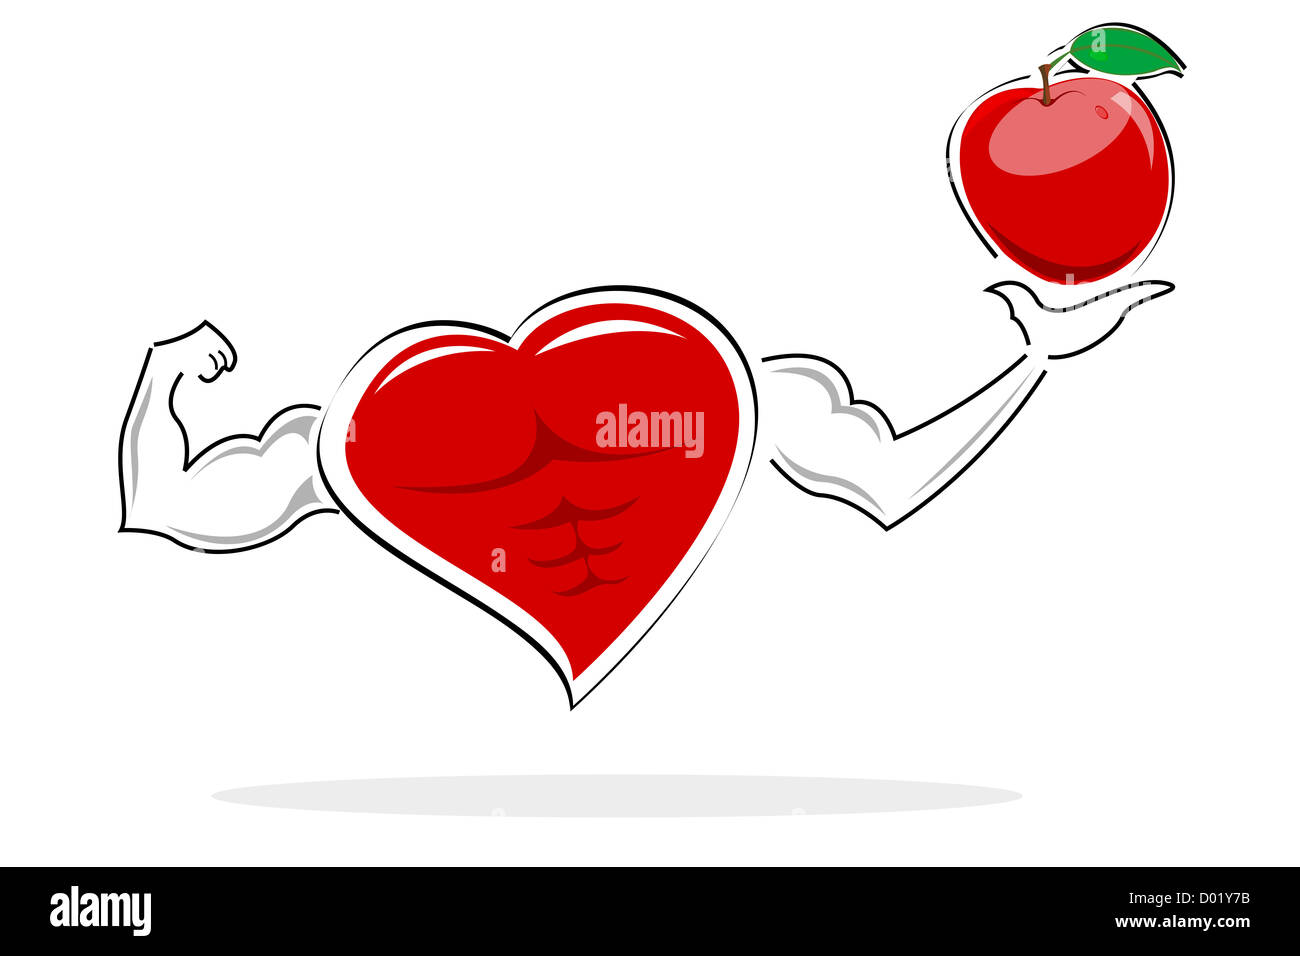 Abbildung des gesunden Herzens hält Apfel auf weißem Hintergrund Stockfoto